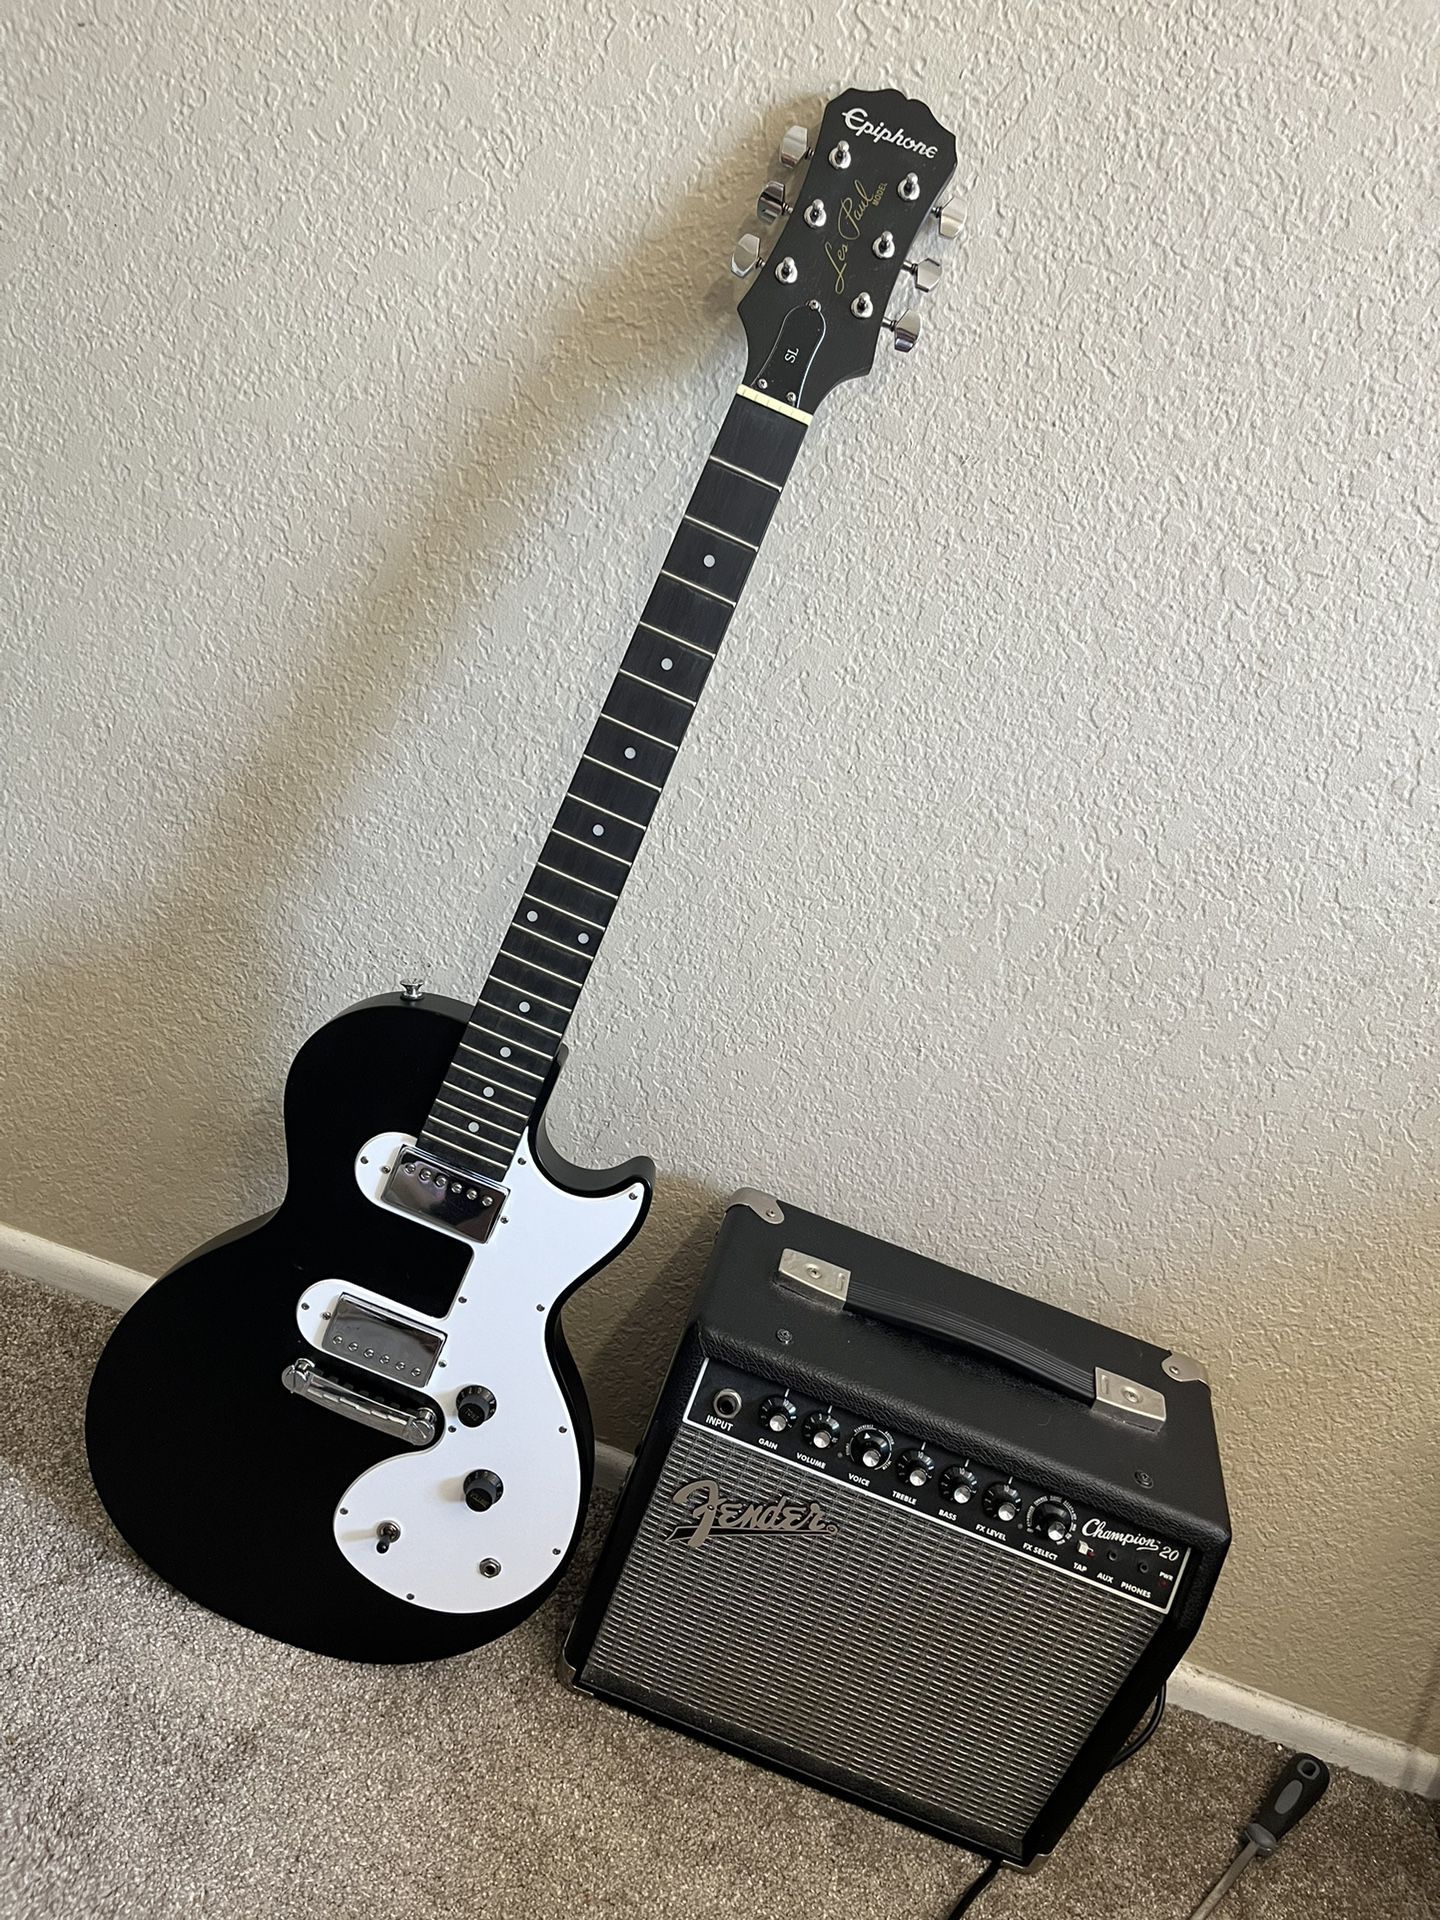 Modded Guitar